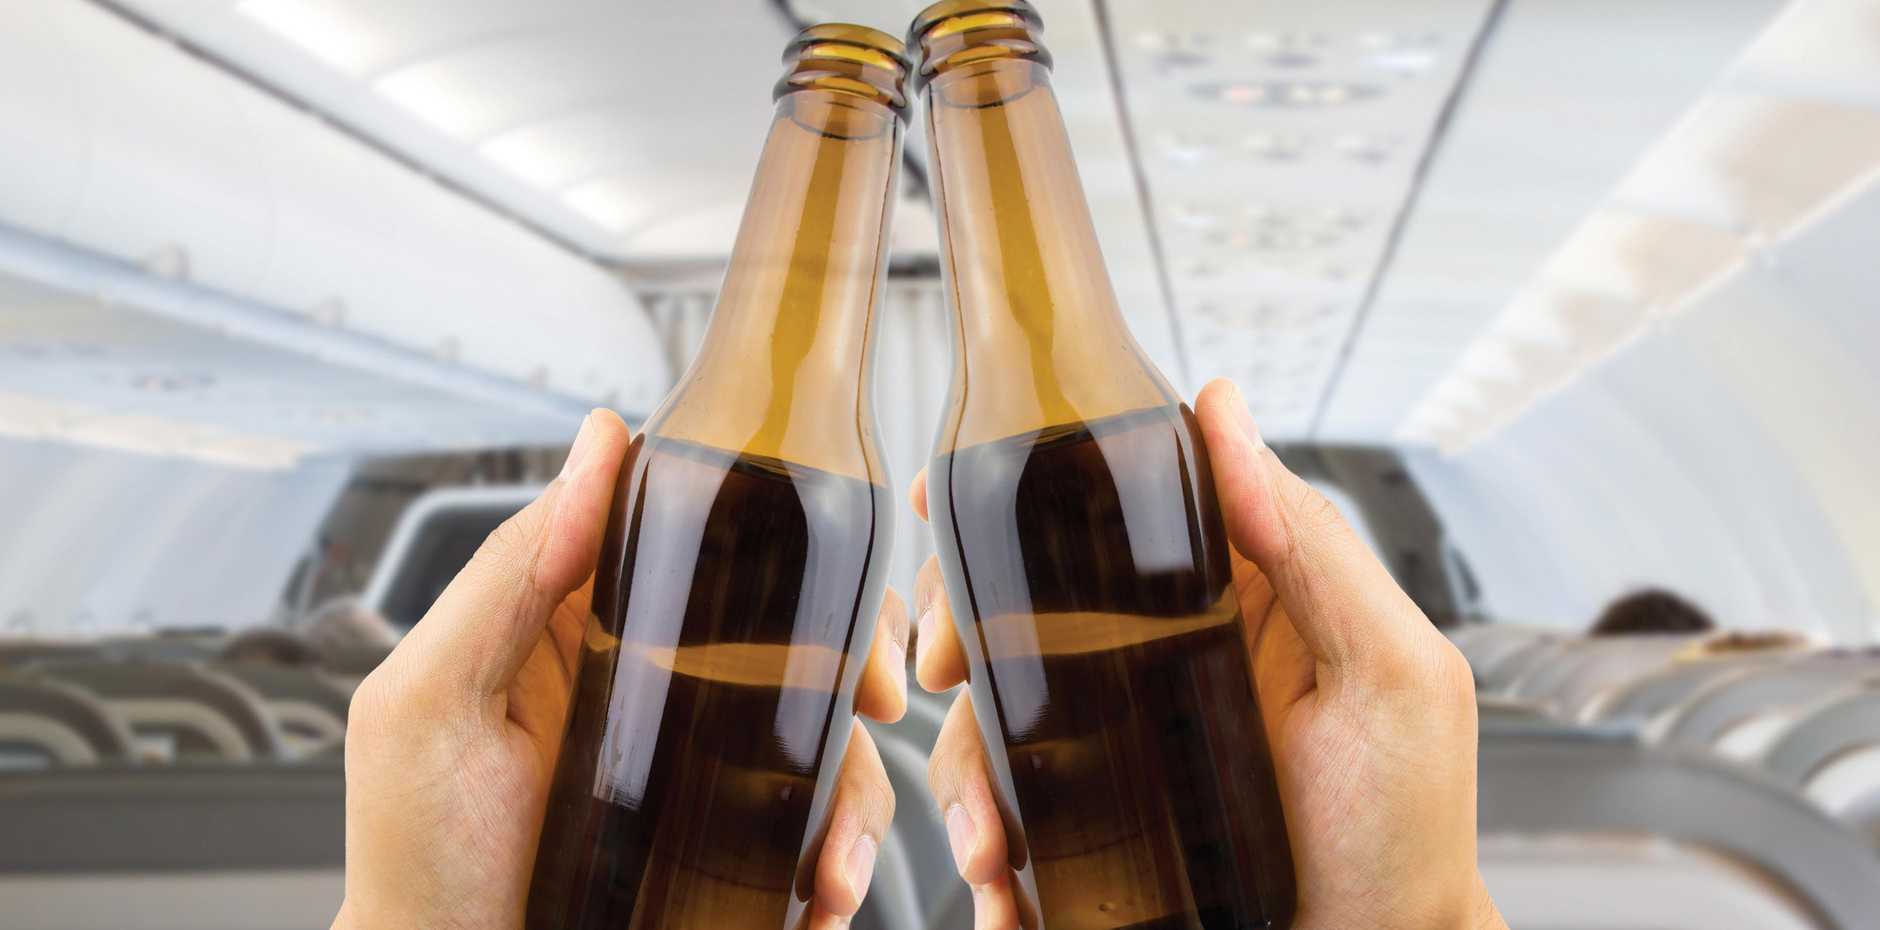 Провоз алкоголя в самолете по россии в 2020 году — правила перевозки спиртного в багаже и ручной клади